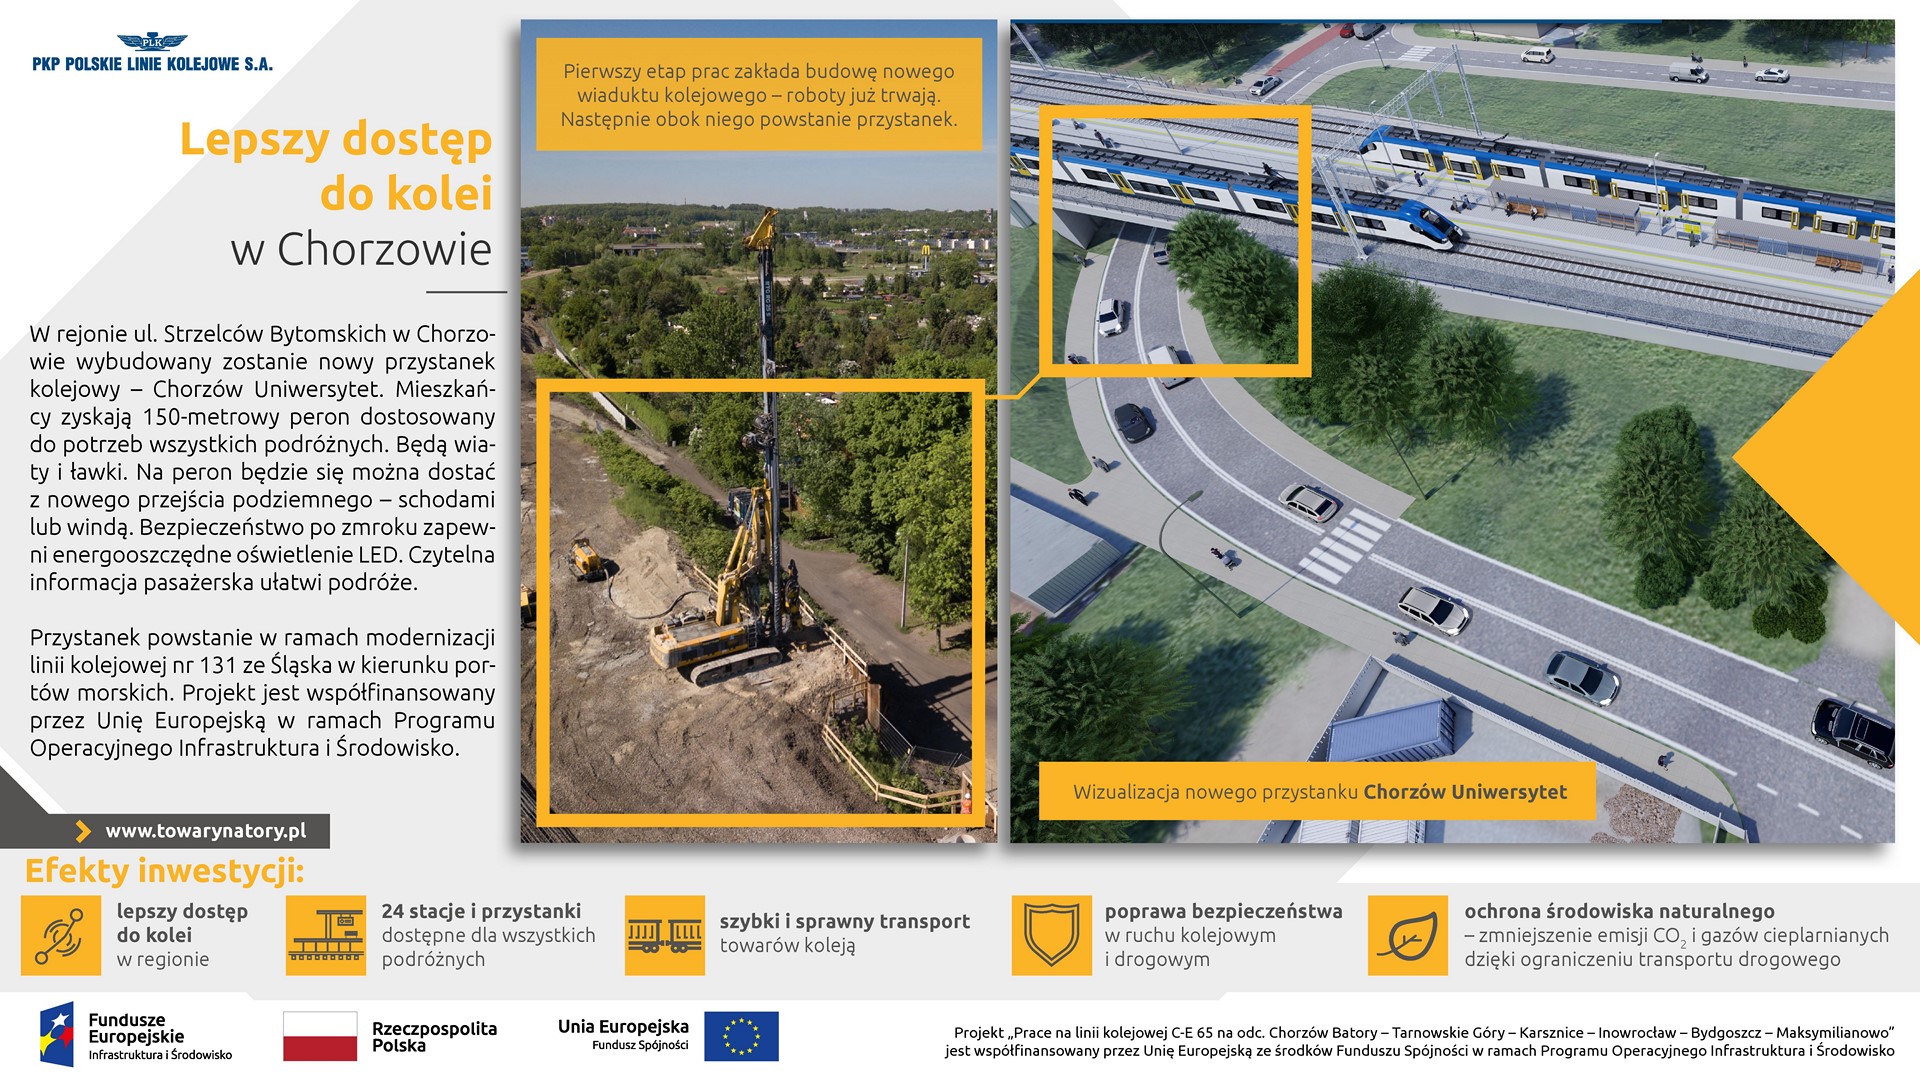 Infografika przedstawia stan aktualny prac budowlanych oraz wizualizacje przystanku kolejowego Chorzów Uniwersytet.